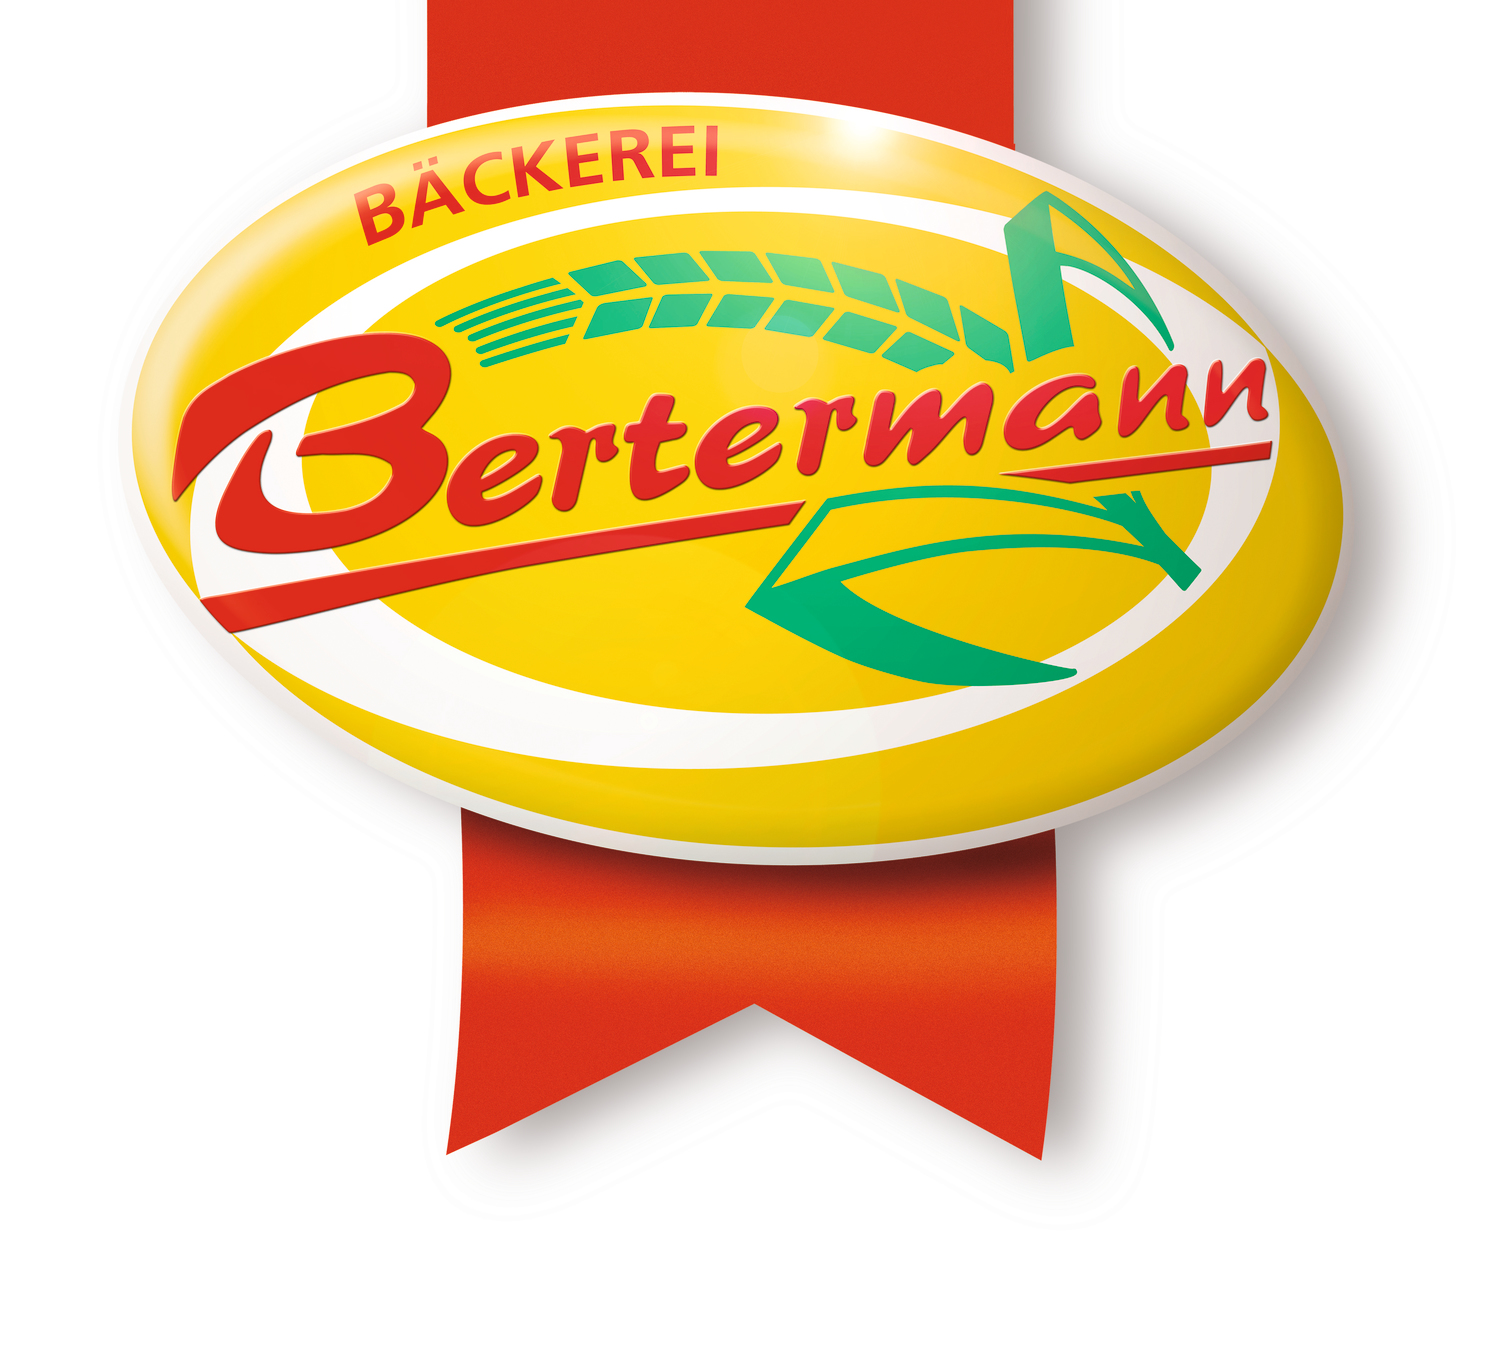 Fachverkäufer - Lebensmittelhandwerk (m/w/d) bei Bäckerei Bertermann GmbH